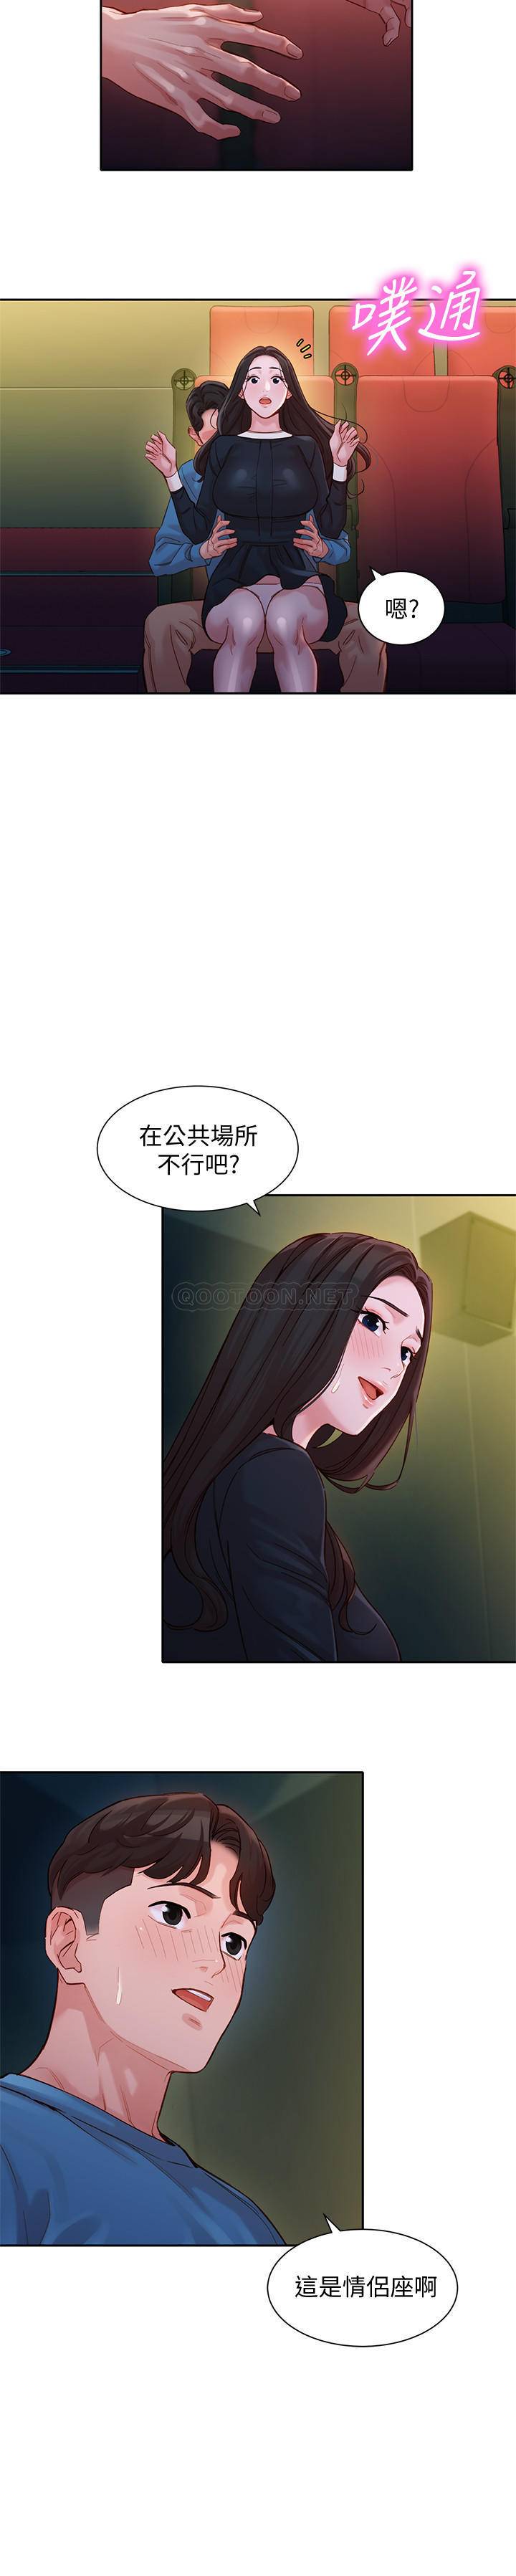 韩国污漫画 女神寫真 第38话-在电影院上演活春宫 17